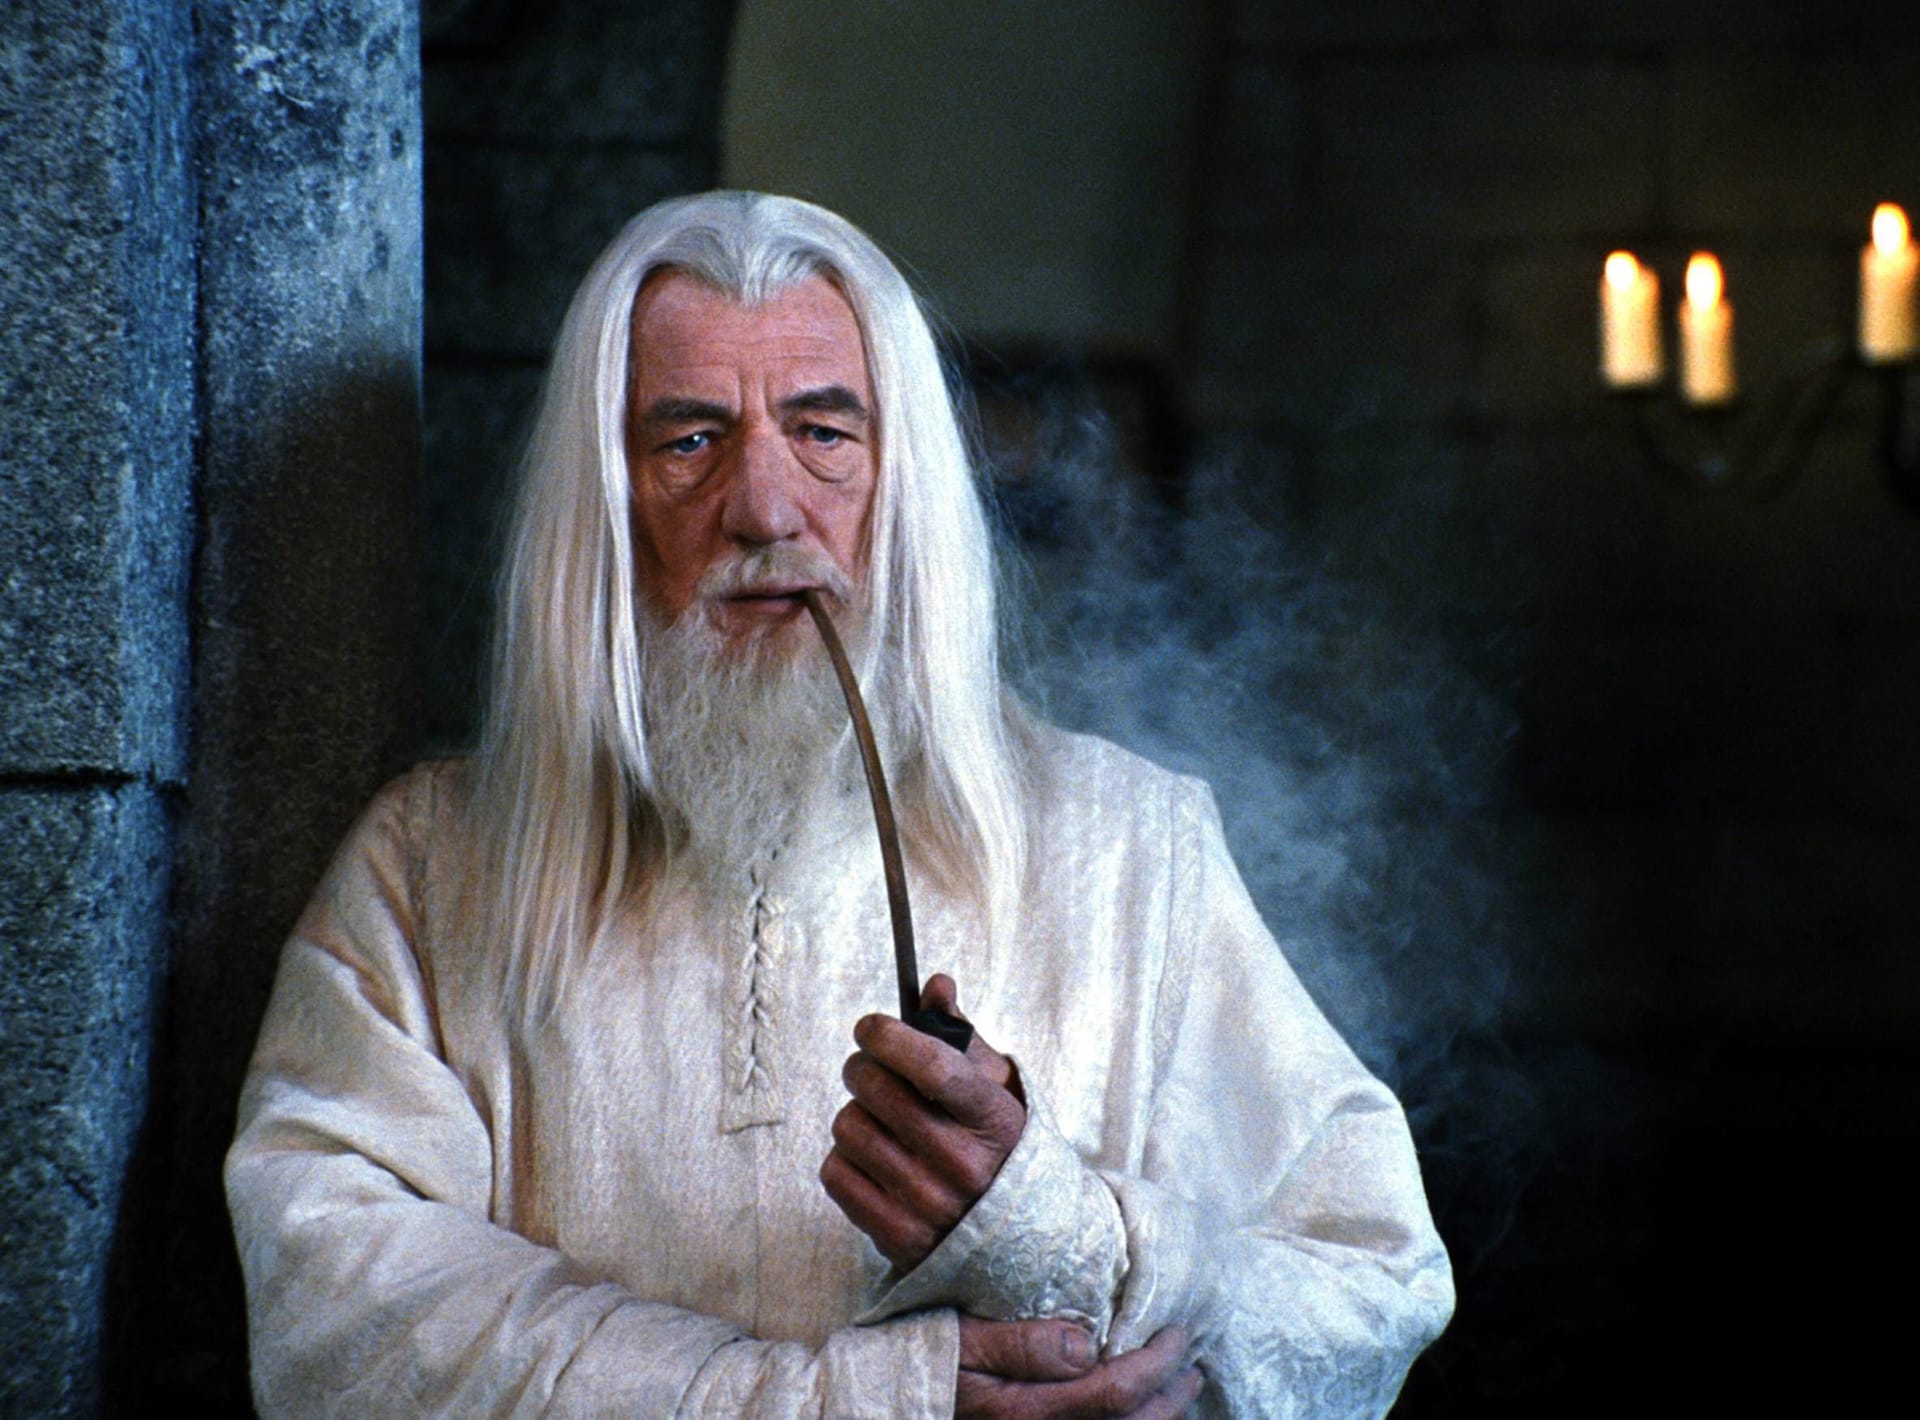 Ian McKellen als Gandalf in "Der Herr der Ringe: Die Rückkehr des Königs" von 2003.